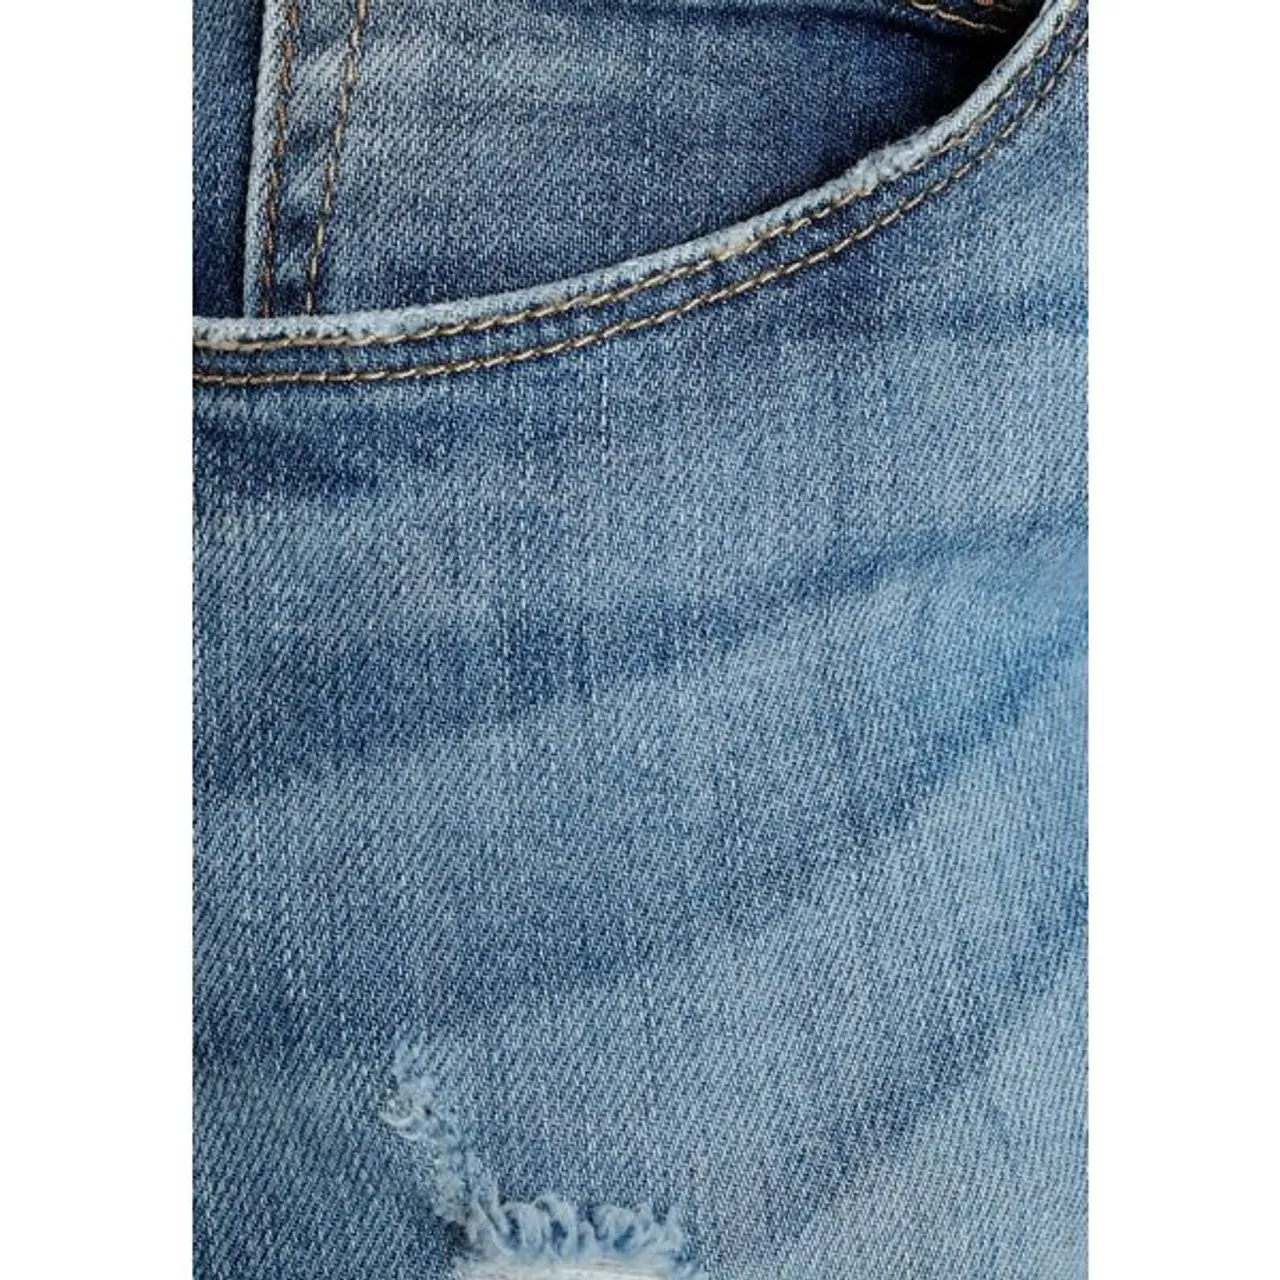 Bootcut-Jeans HERRLICHER "Baby Boot Organic Denim" Gr. 26, Länge 32, blau (fadedblue) Damen Jeans Bootcut mit figurformenden Abnähern an den Gesäßtasc...